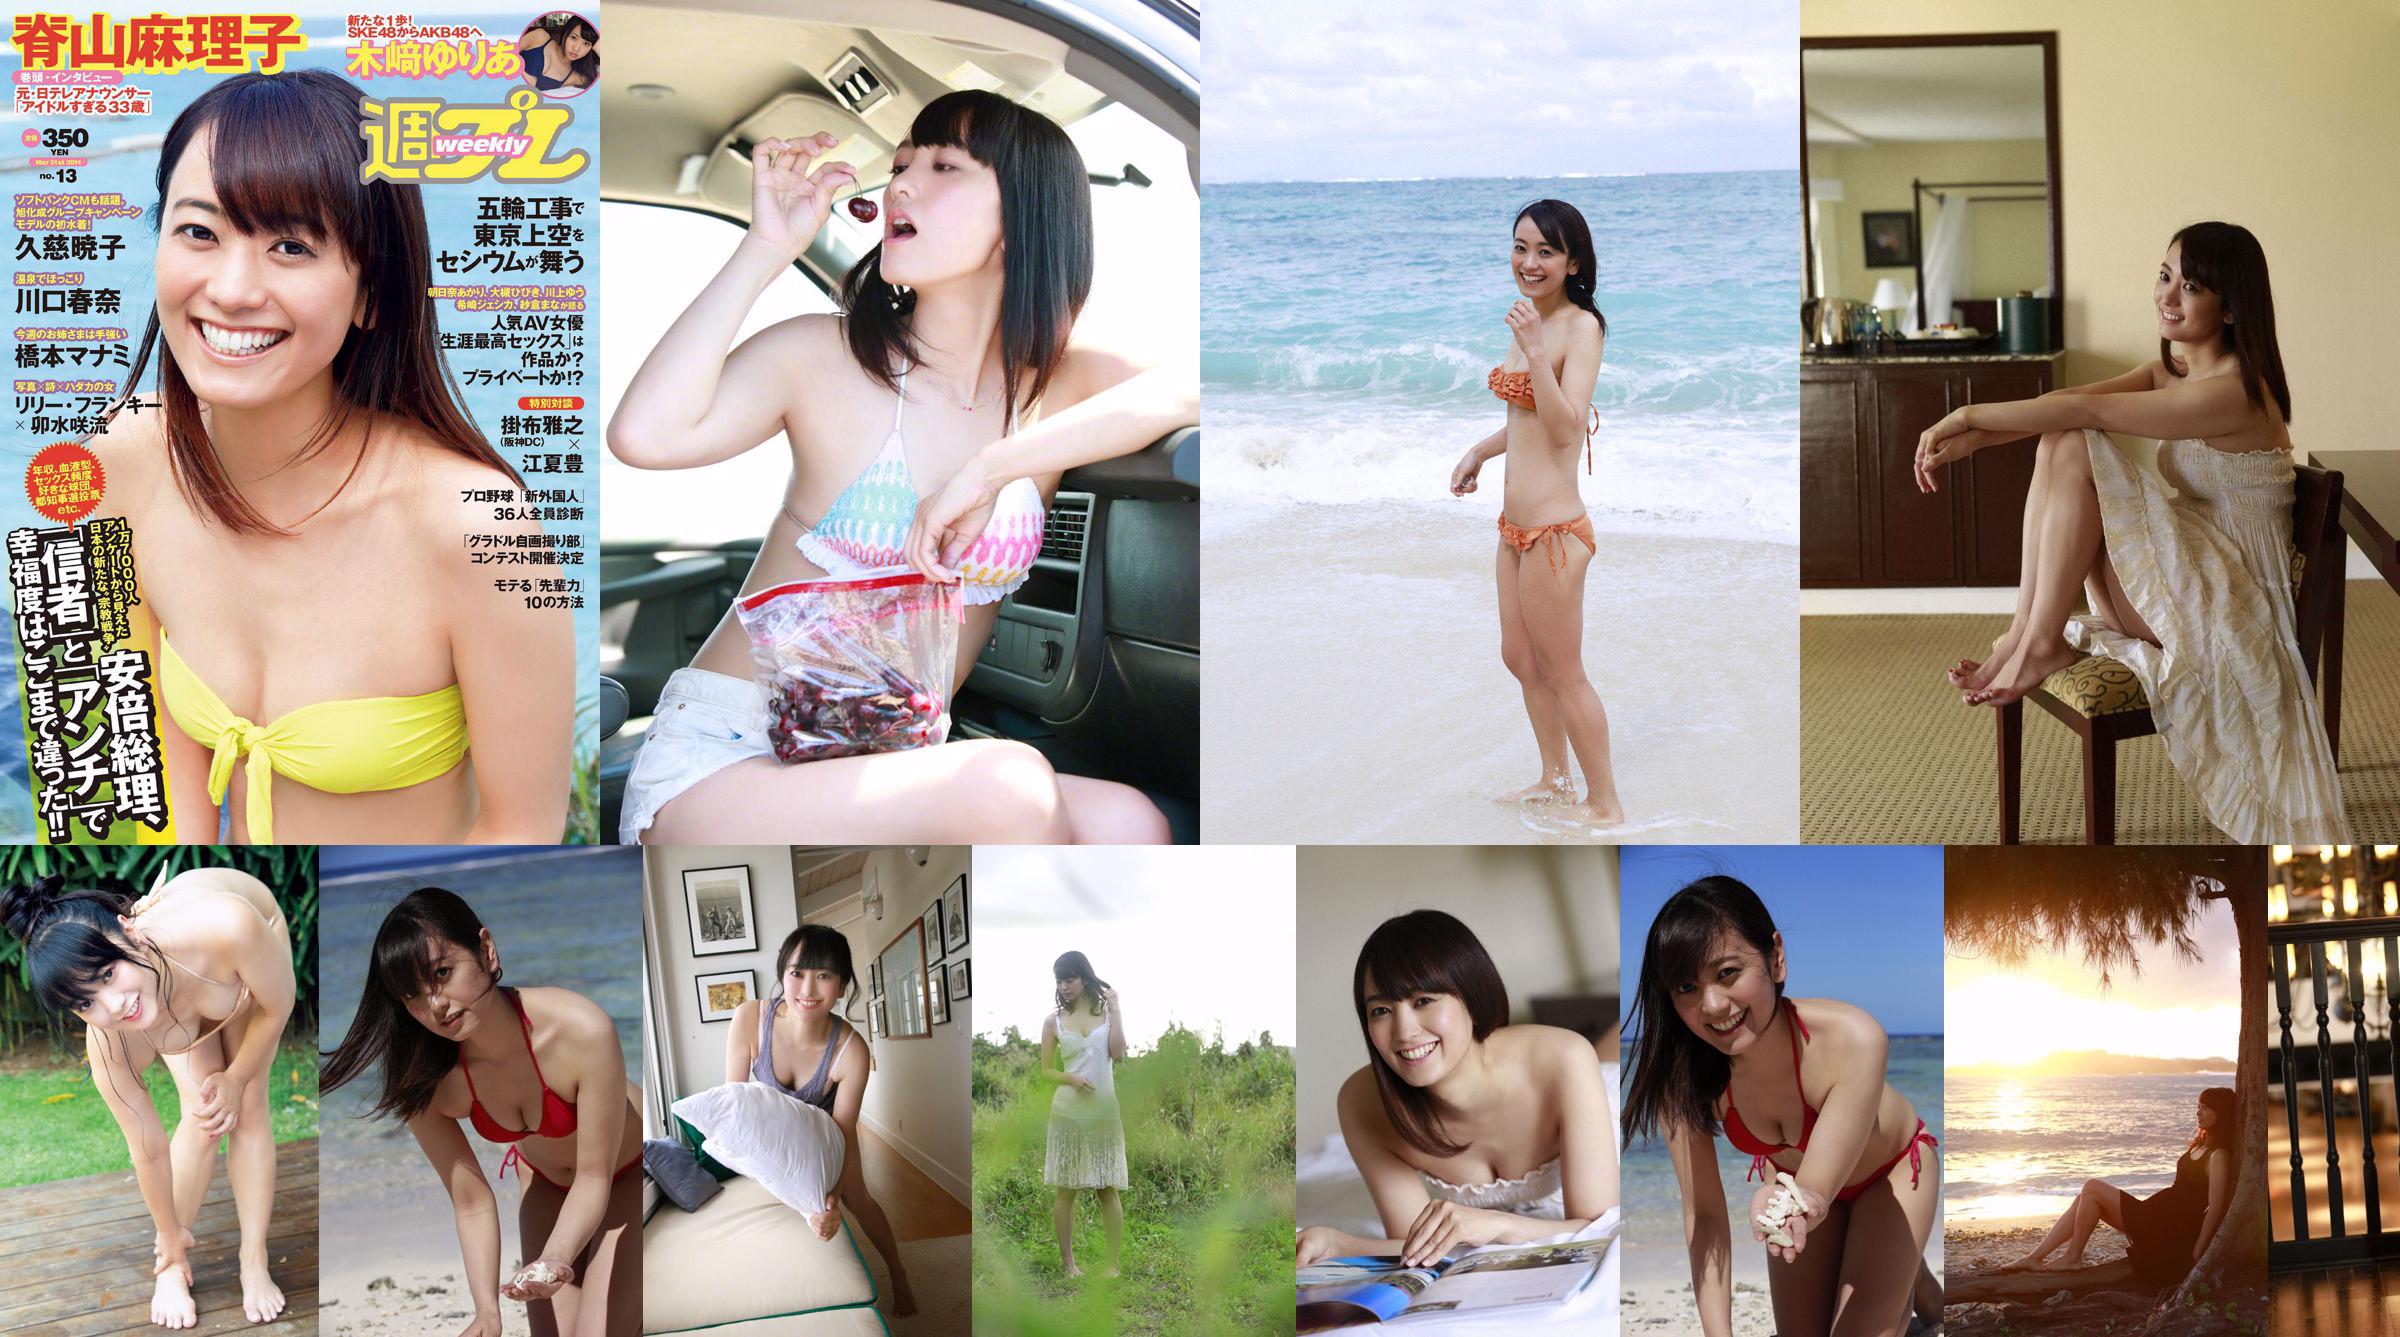 Sariyama Mariko "Aidaru 33 anos" [WPB-net] No.165 No.31e422 Página 1